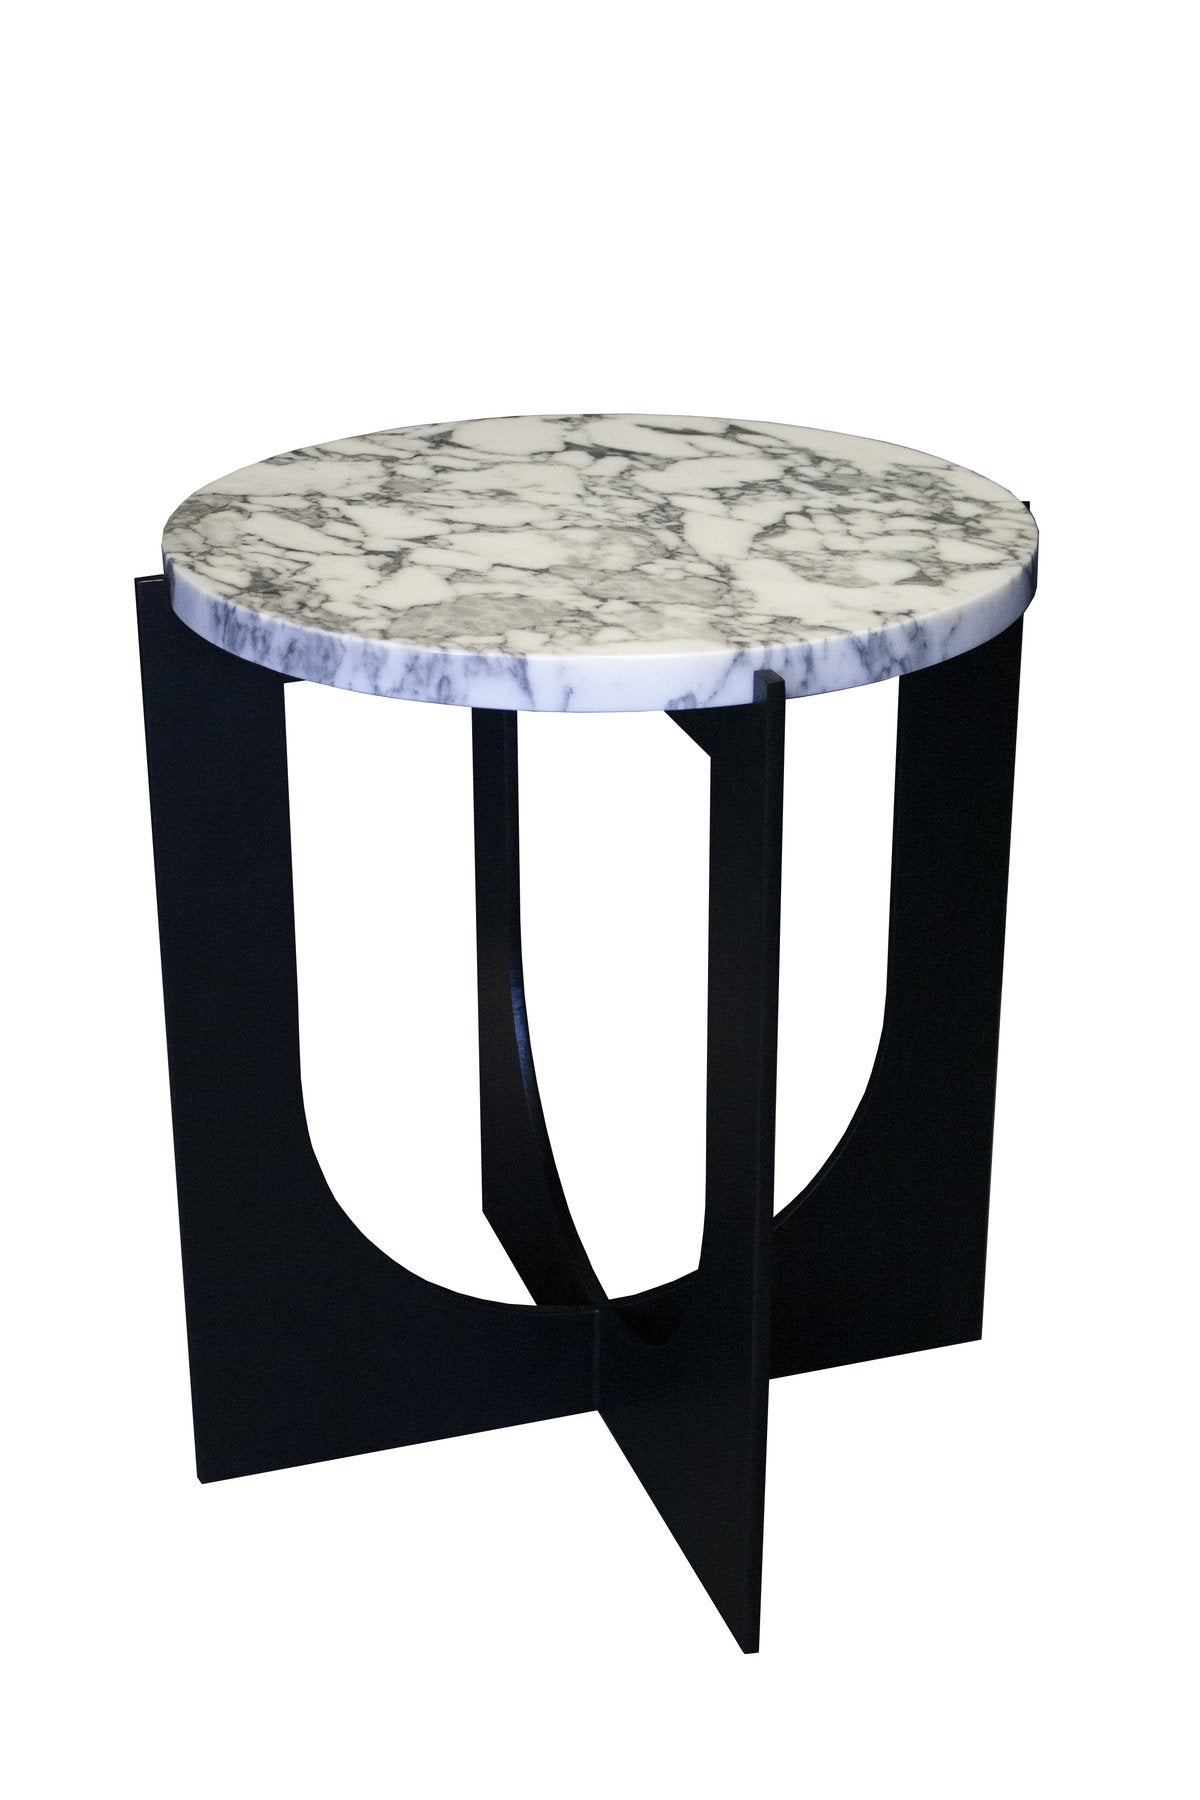 Furniture_SideTables_Metal_Marble